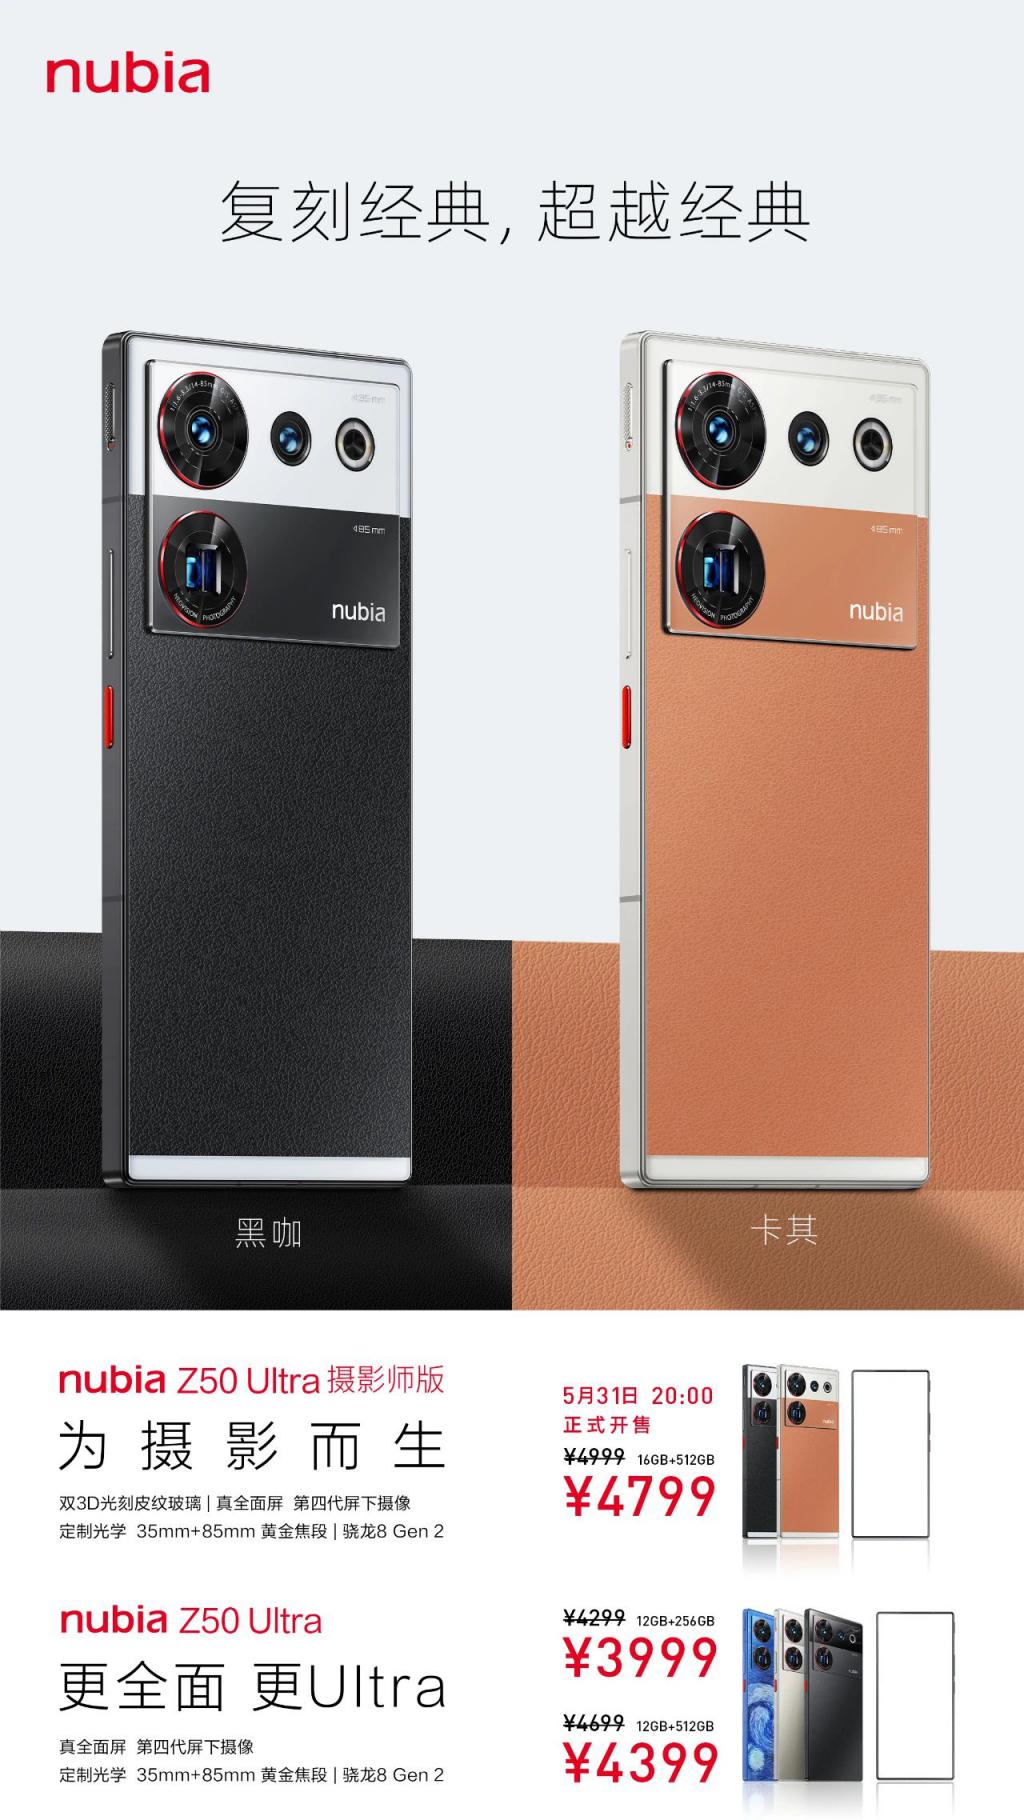 4799 元 Z50Ultra 摄影师版发布 俩颜色 有内味儿了